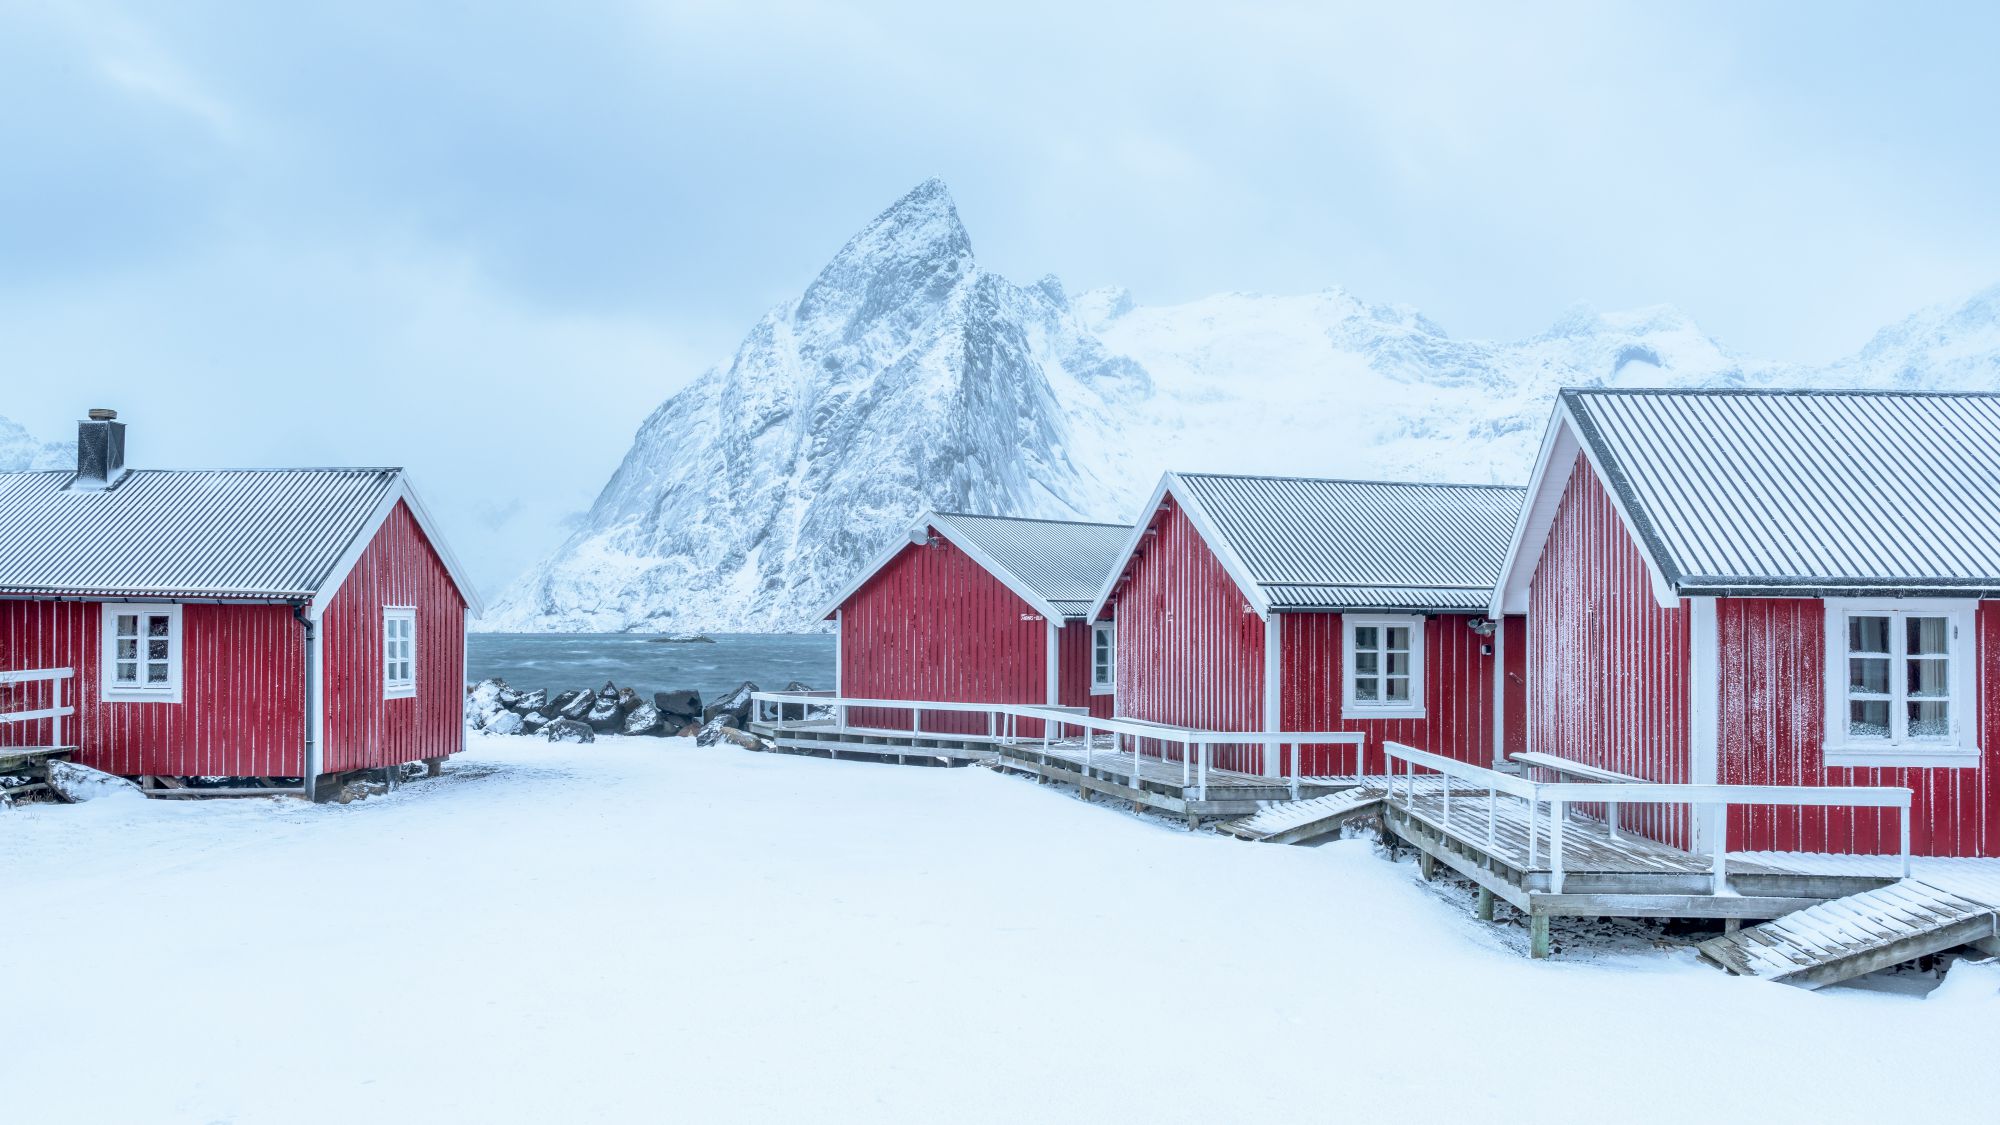 Rode hutjes en bergen in sneeuw